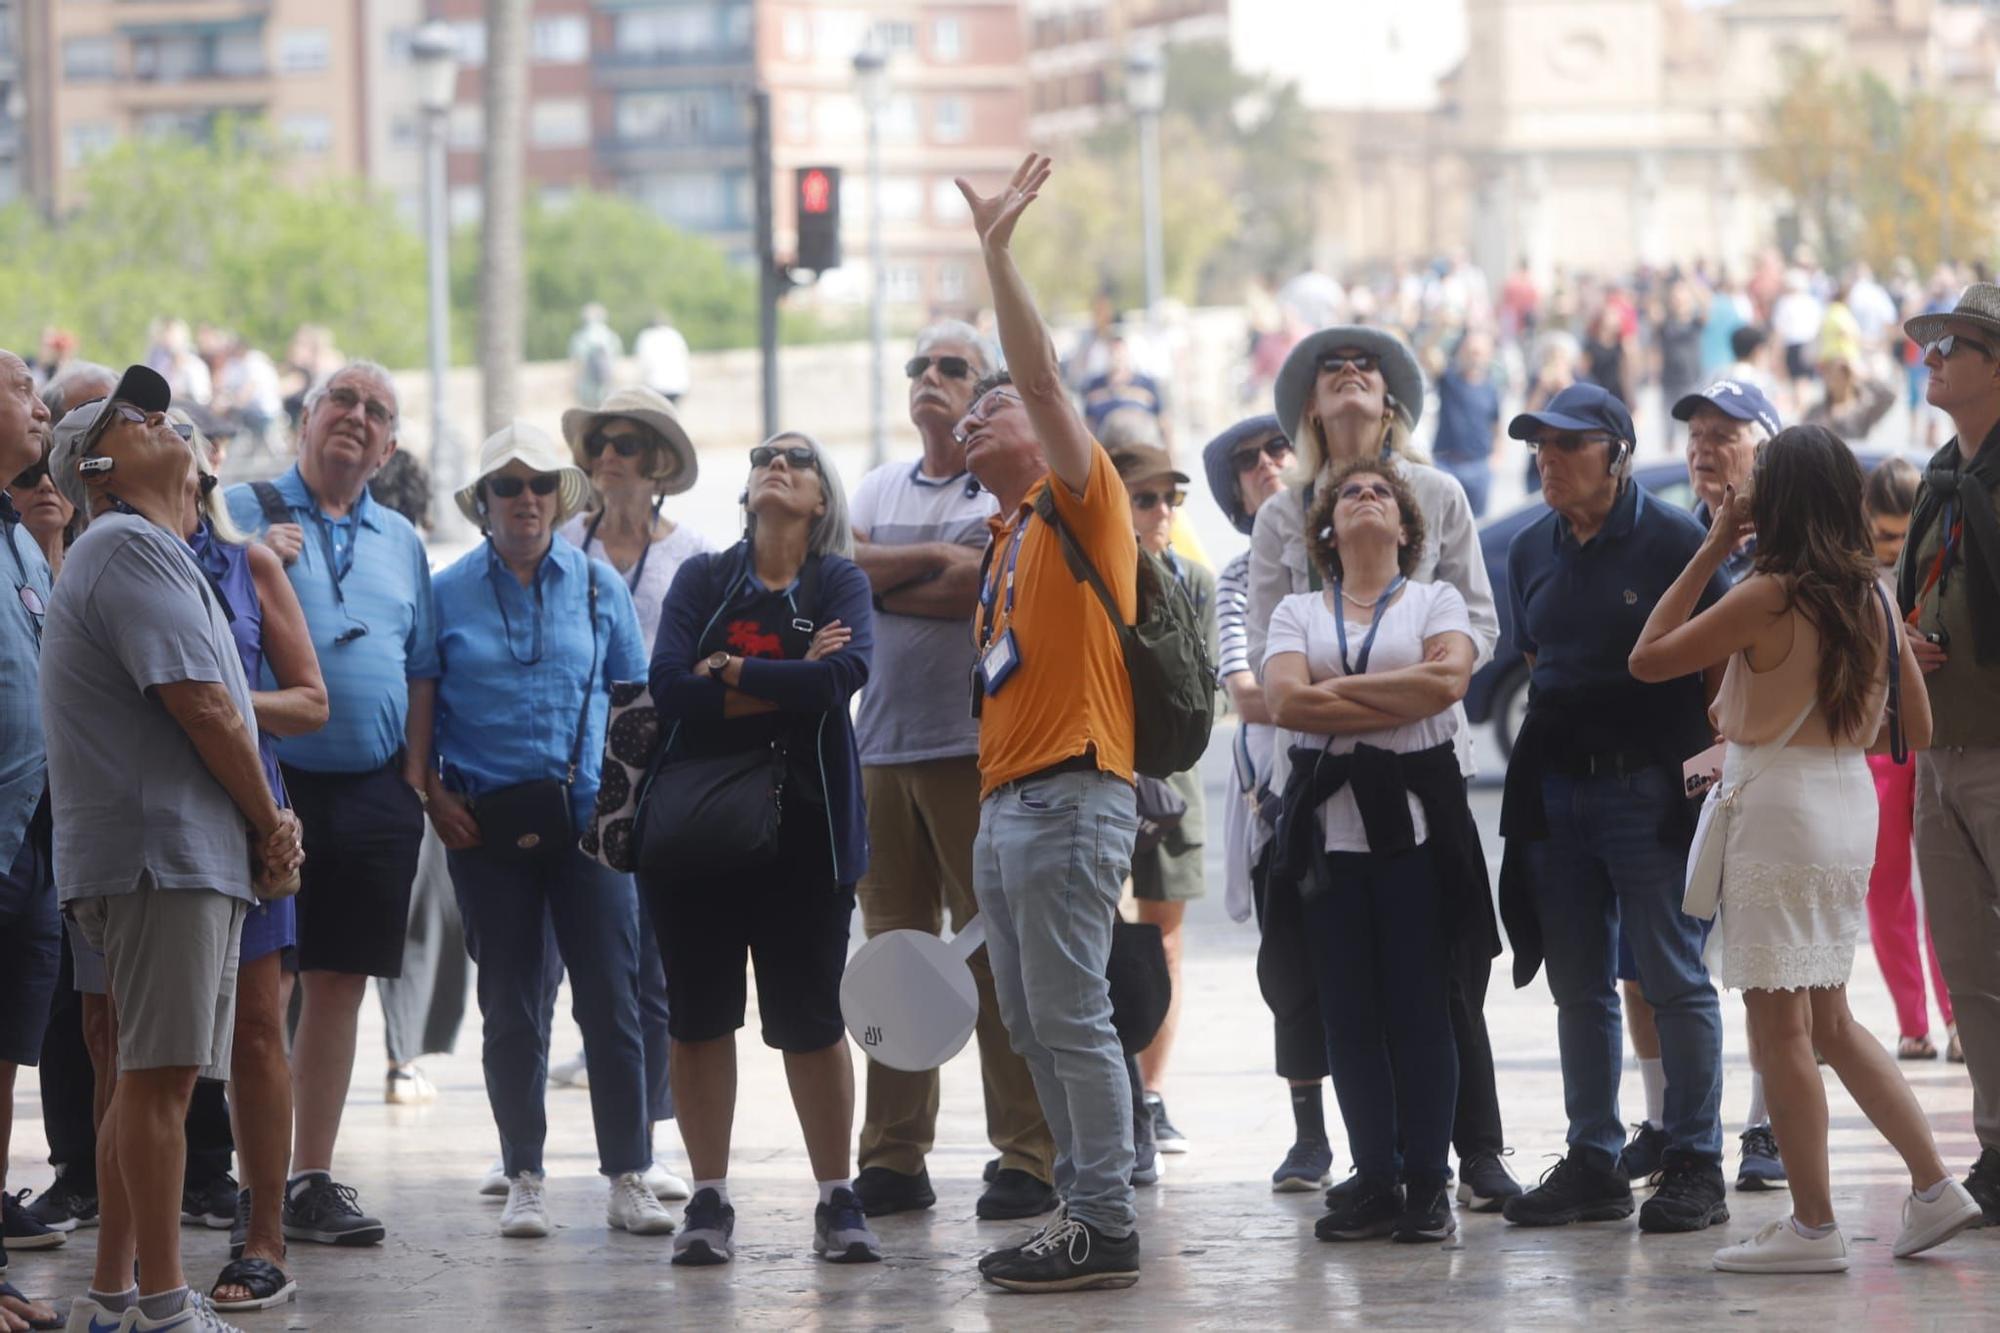 València a rebosar de gente en el fin de semana previo al puente del 1 de mayo